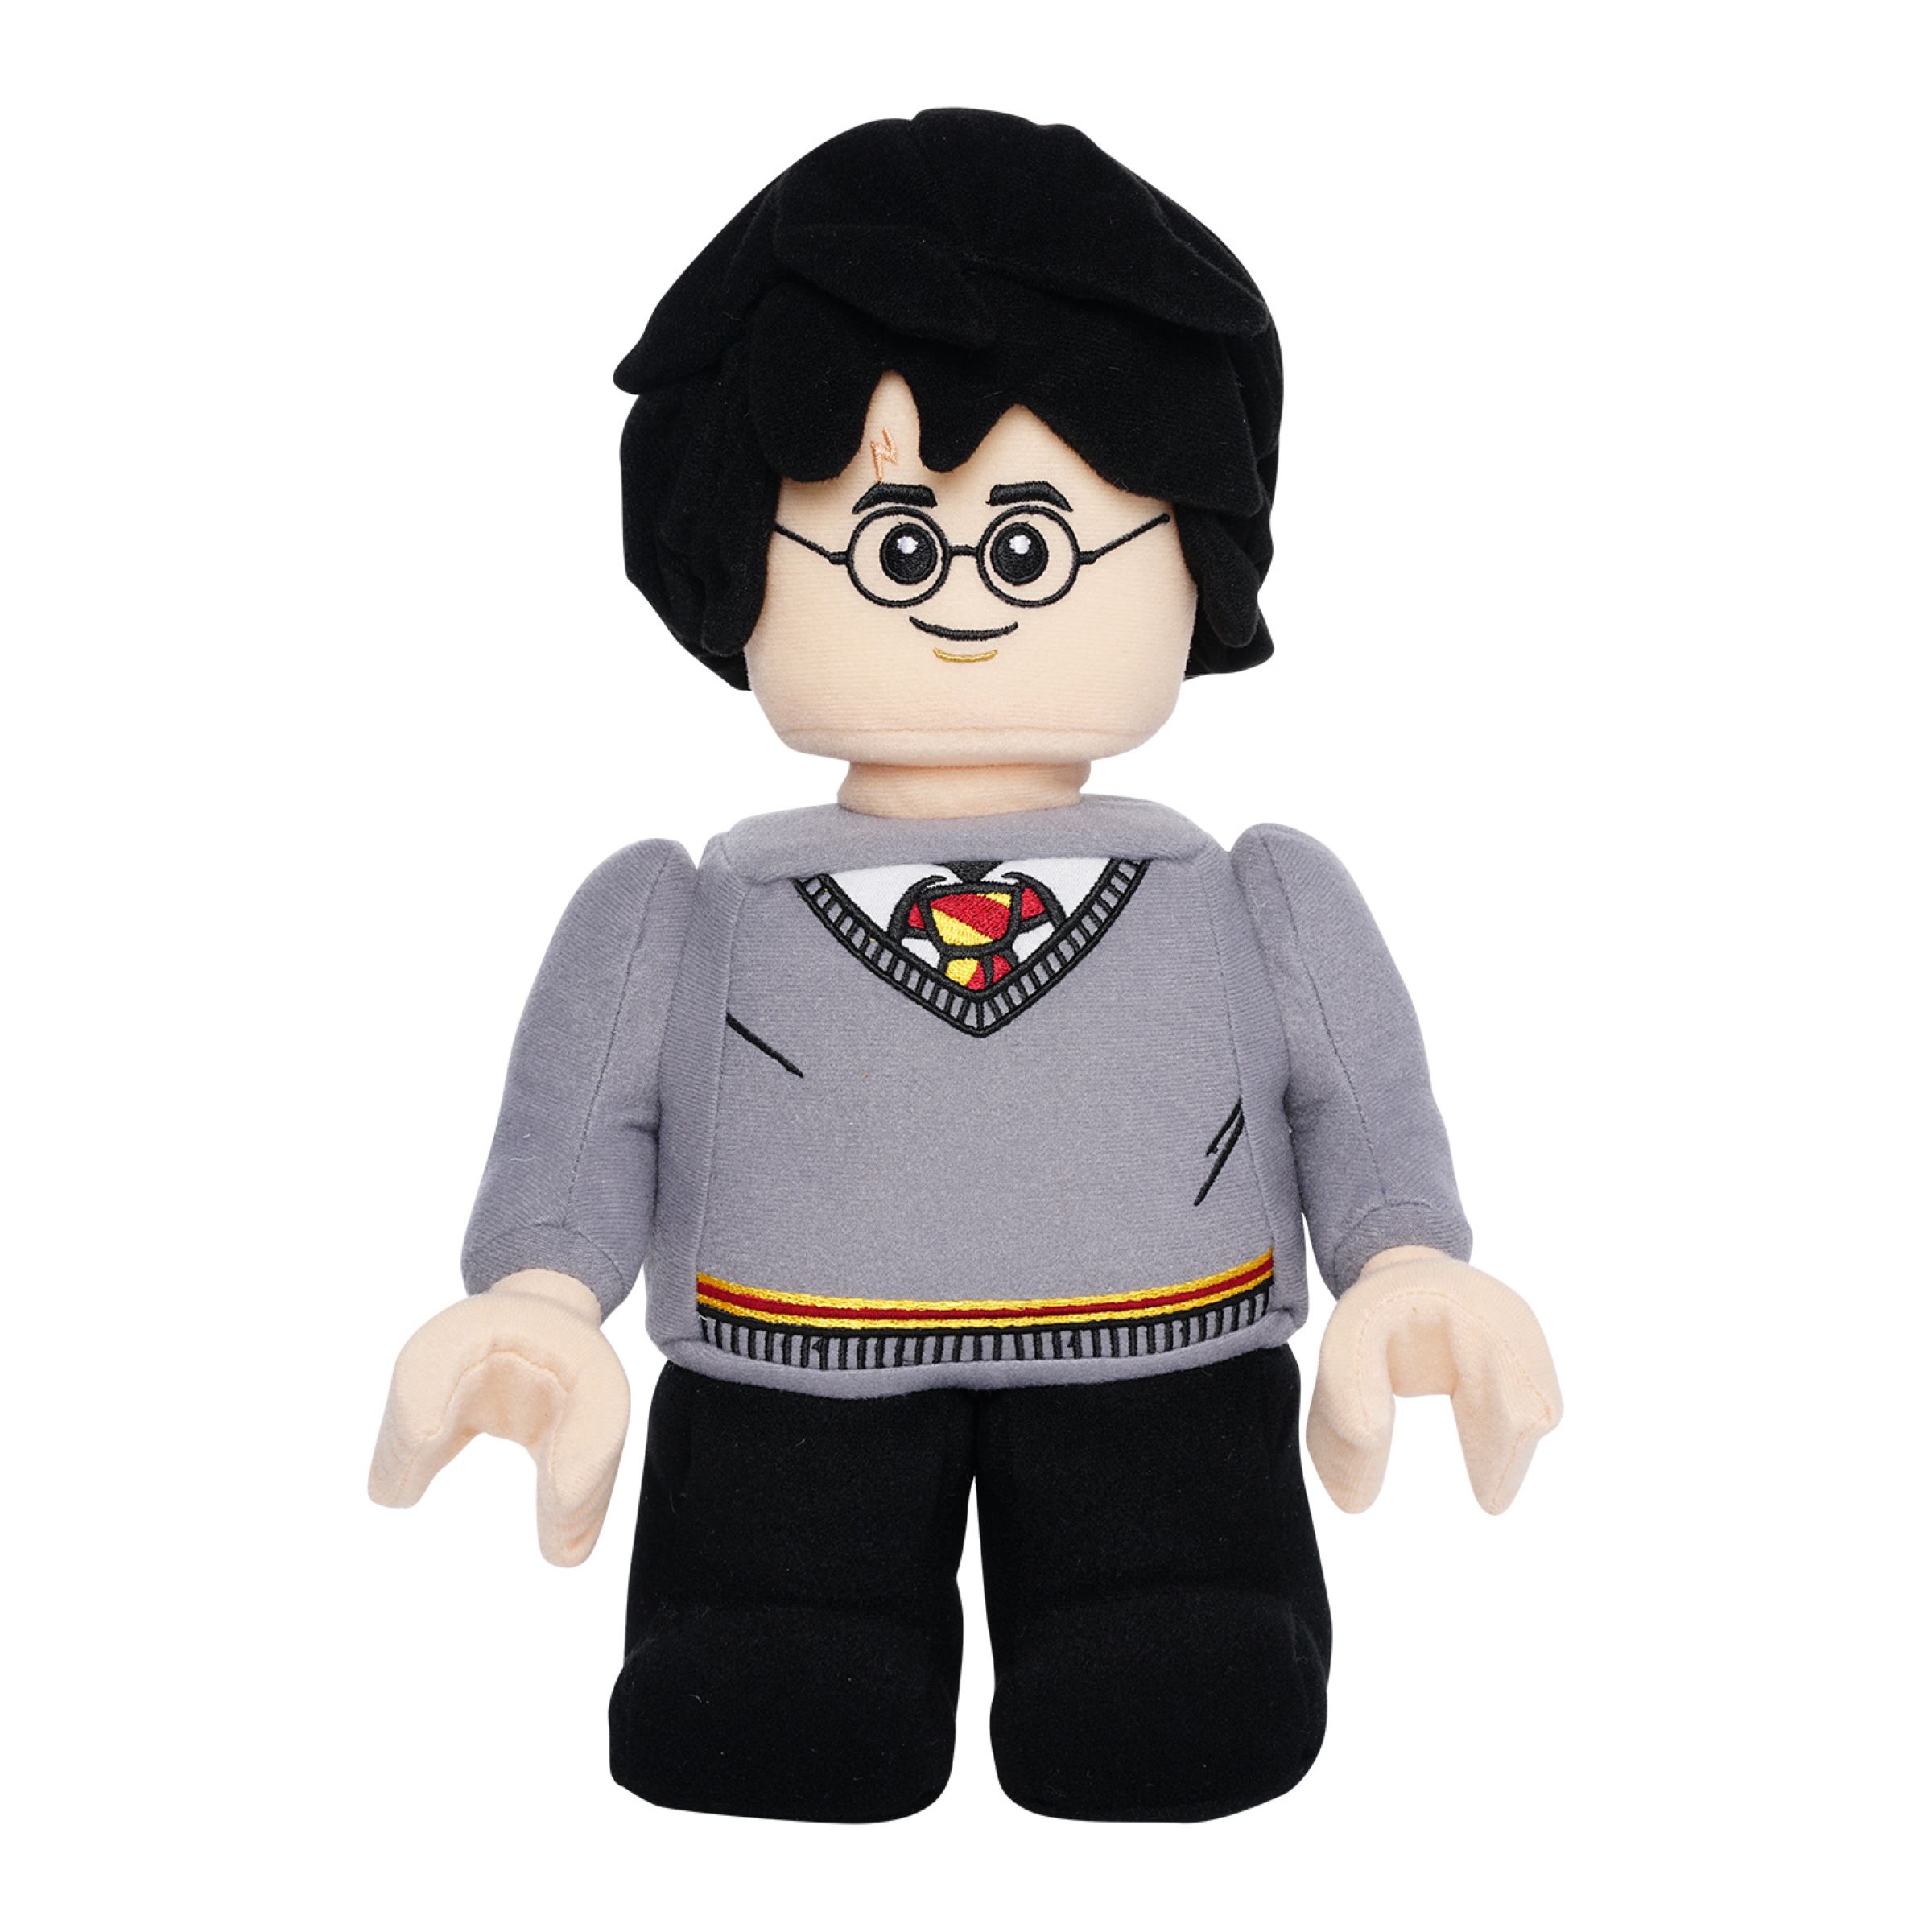 Lego Harry Potter Plush Minifigure